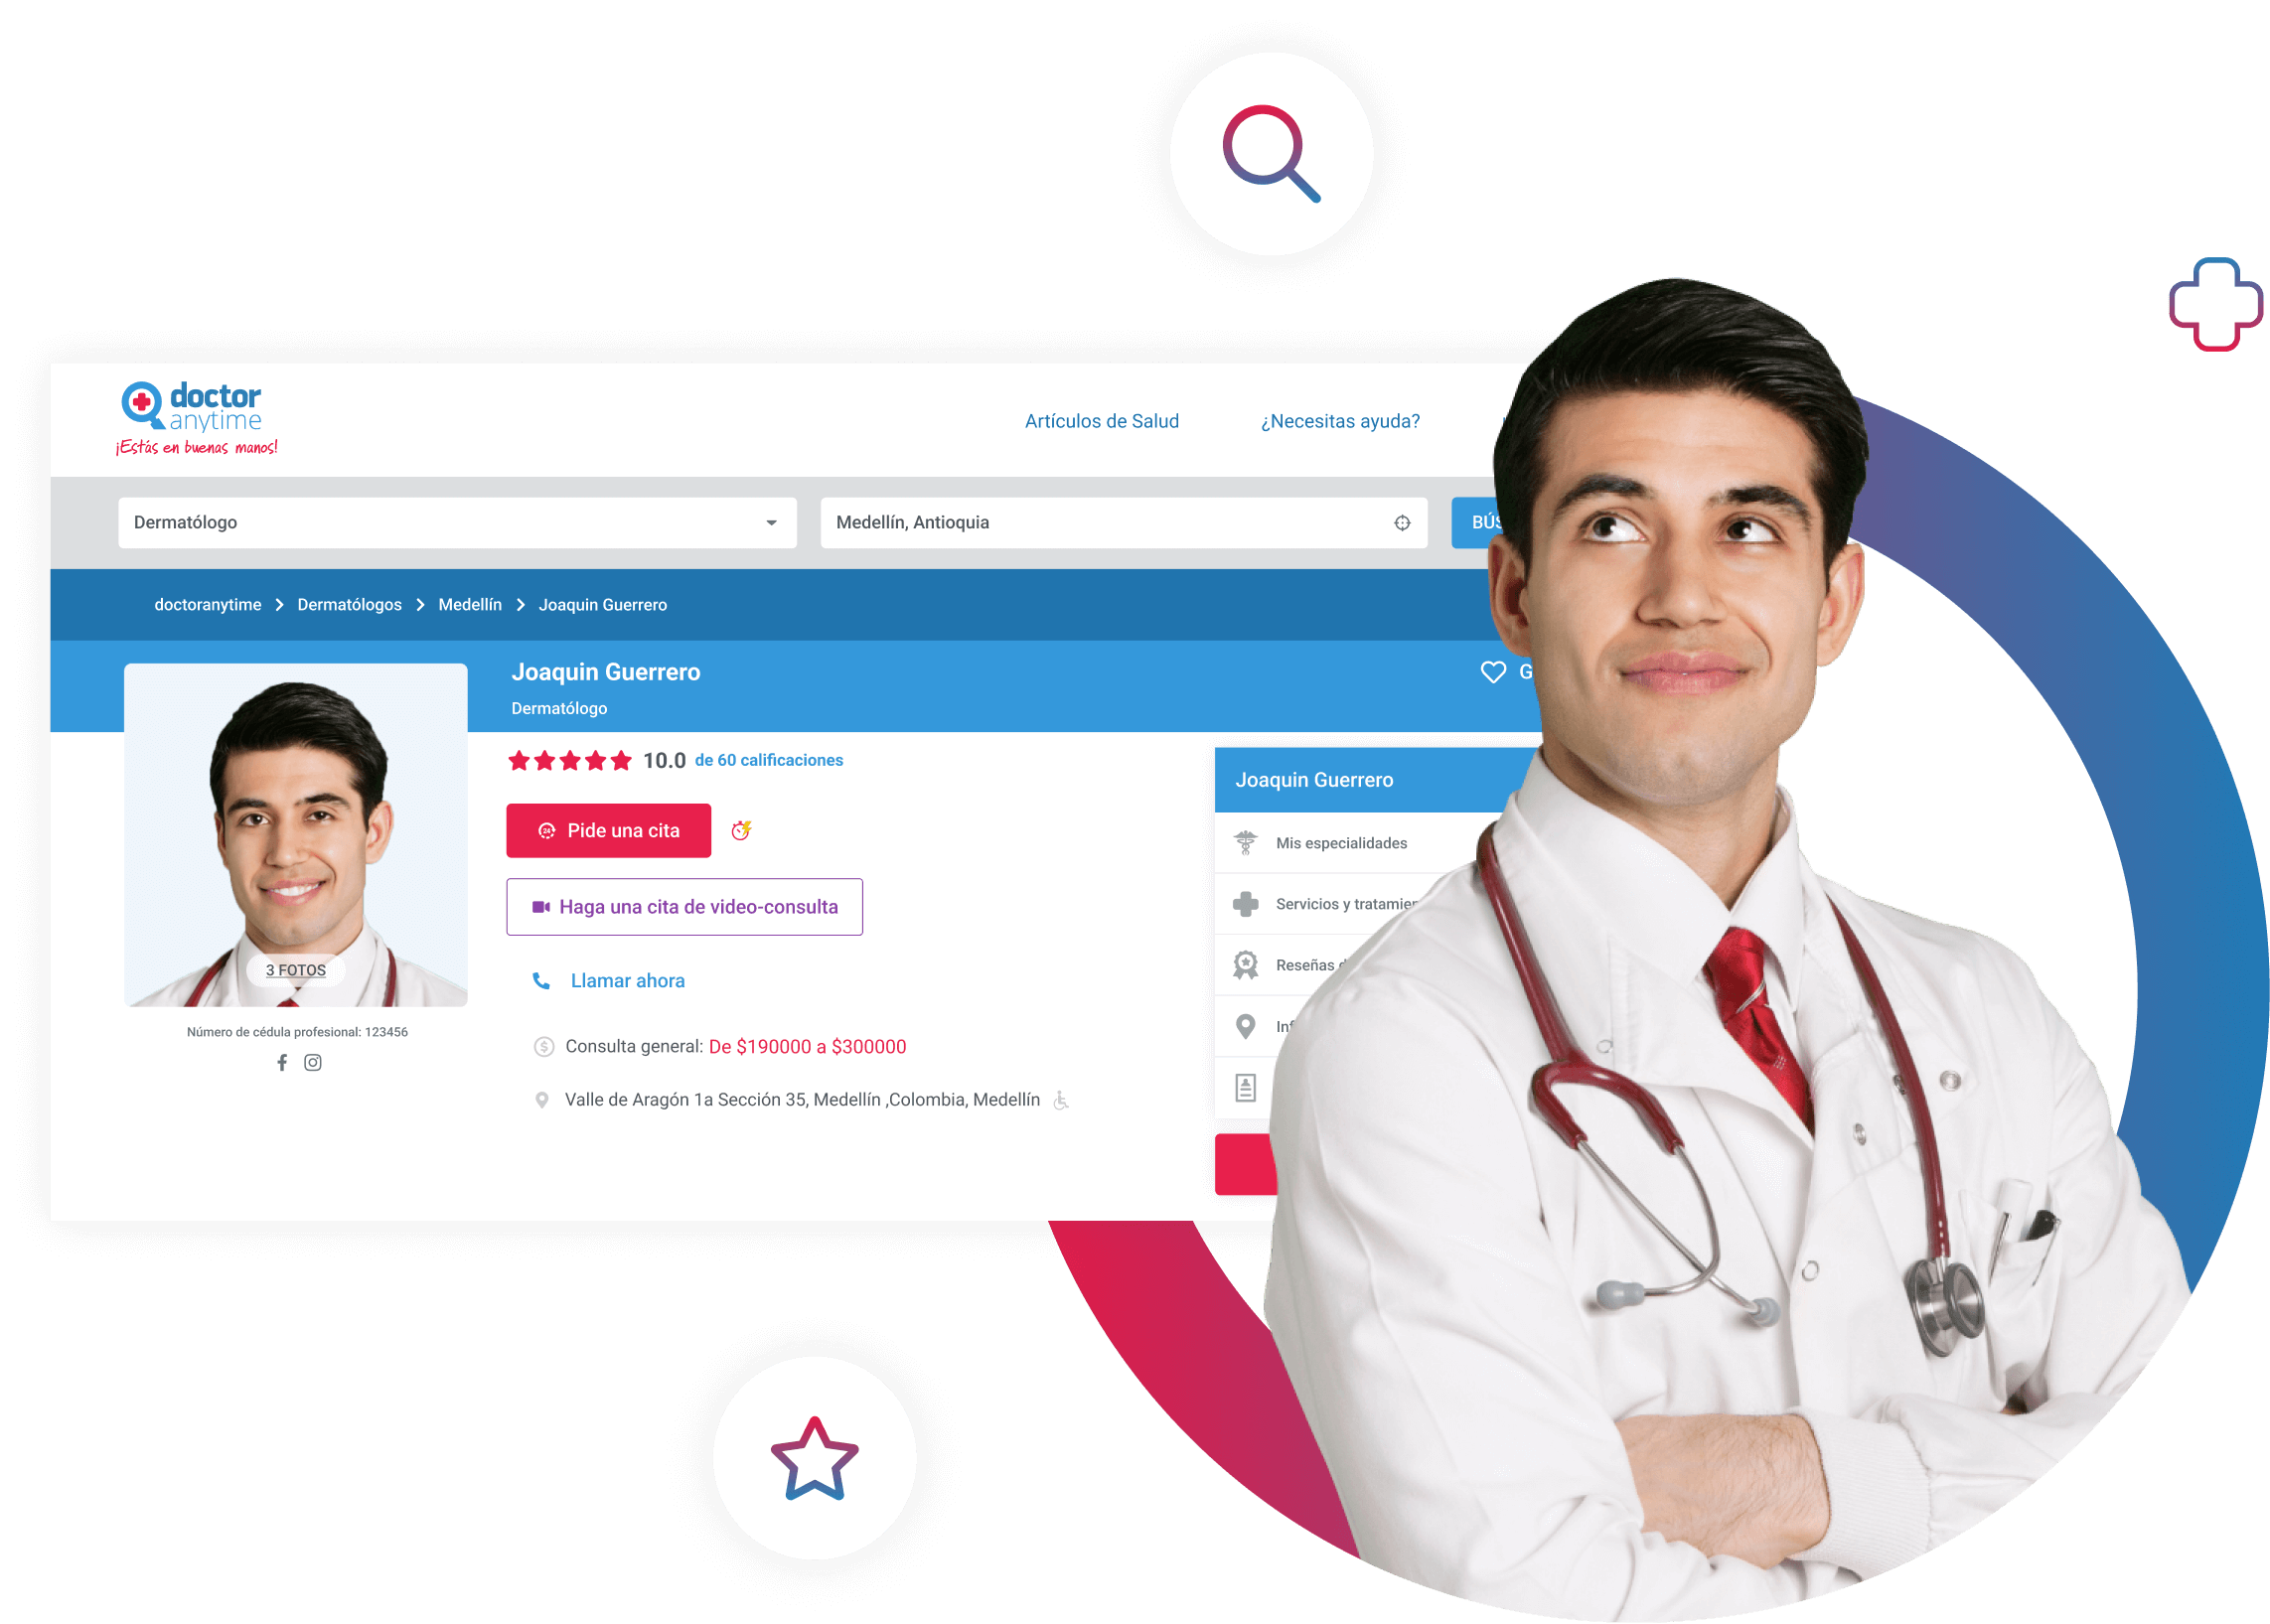 Médico Dermatólogo con su perfil completo en la plataforma médica de Doctoranytime para hacer consultas médicas en línea.